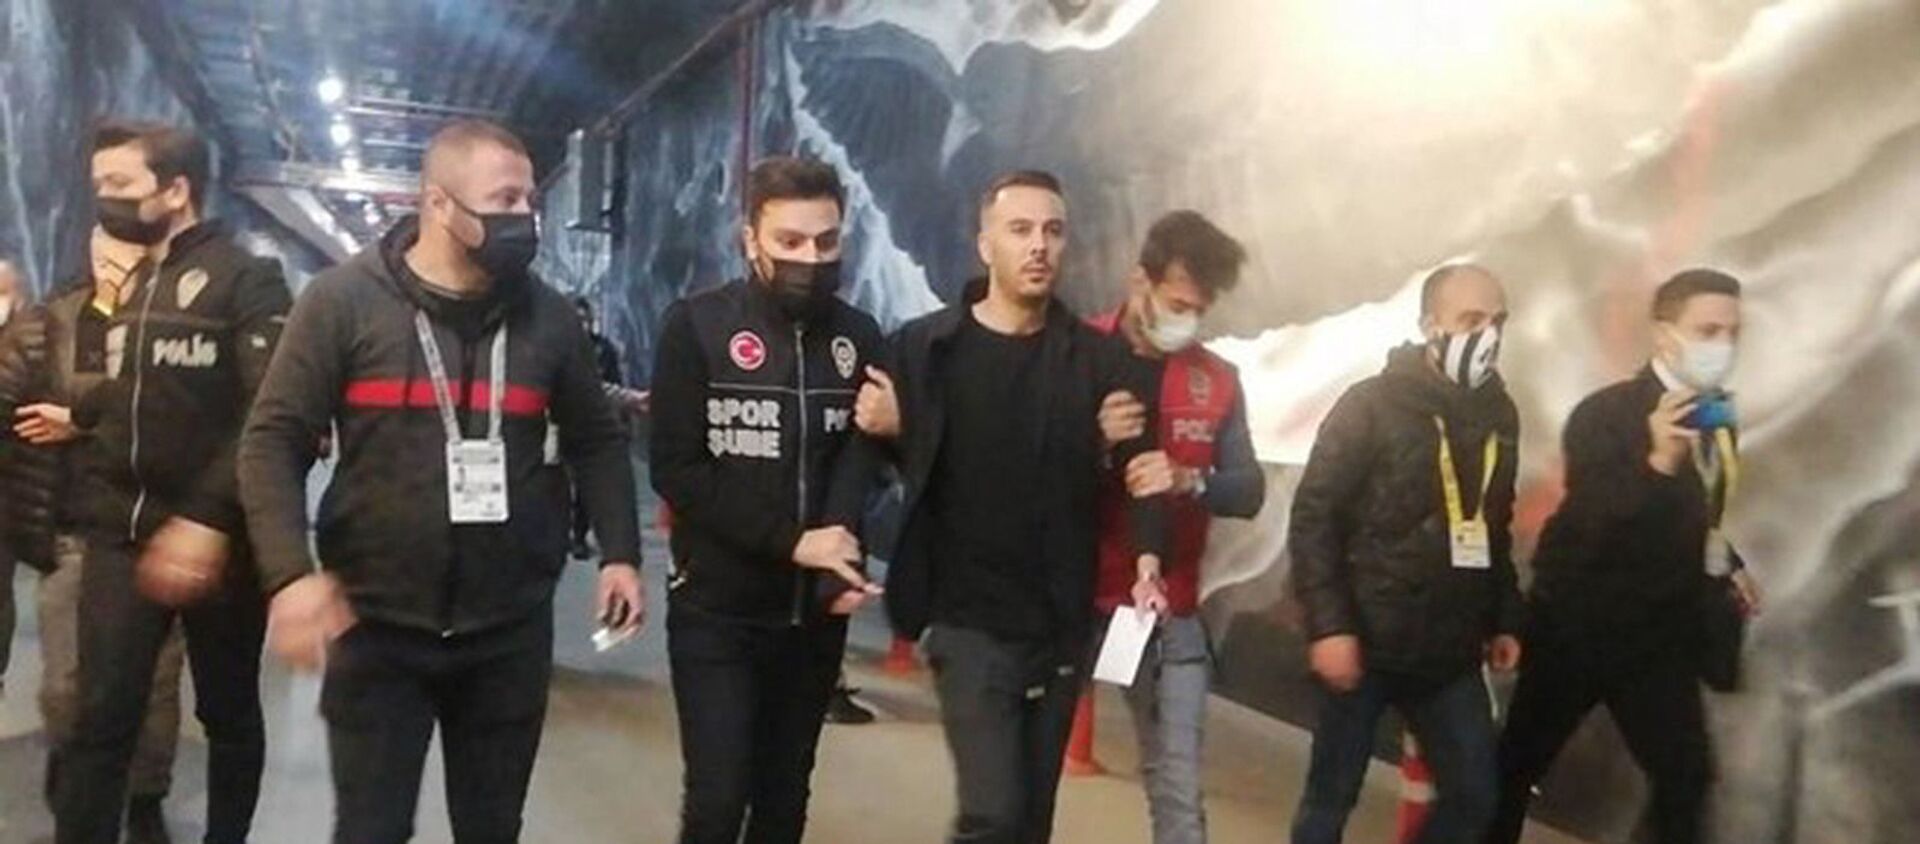 Beşiktaş oyuncusu Ghezzal'ın menajeri Hakan Korkmaz, maçın ardından gözaltına alındı - Sputnik Türkiye, 1920, 11.05.2021